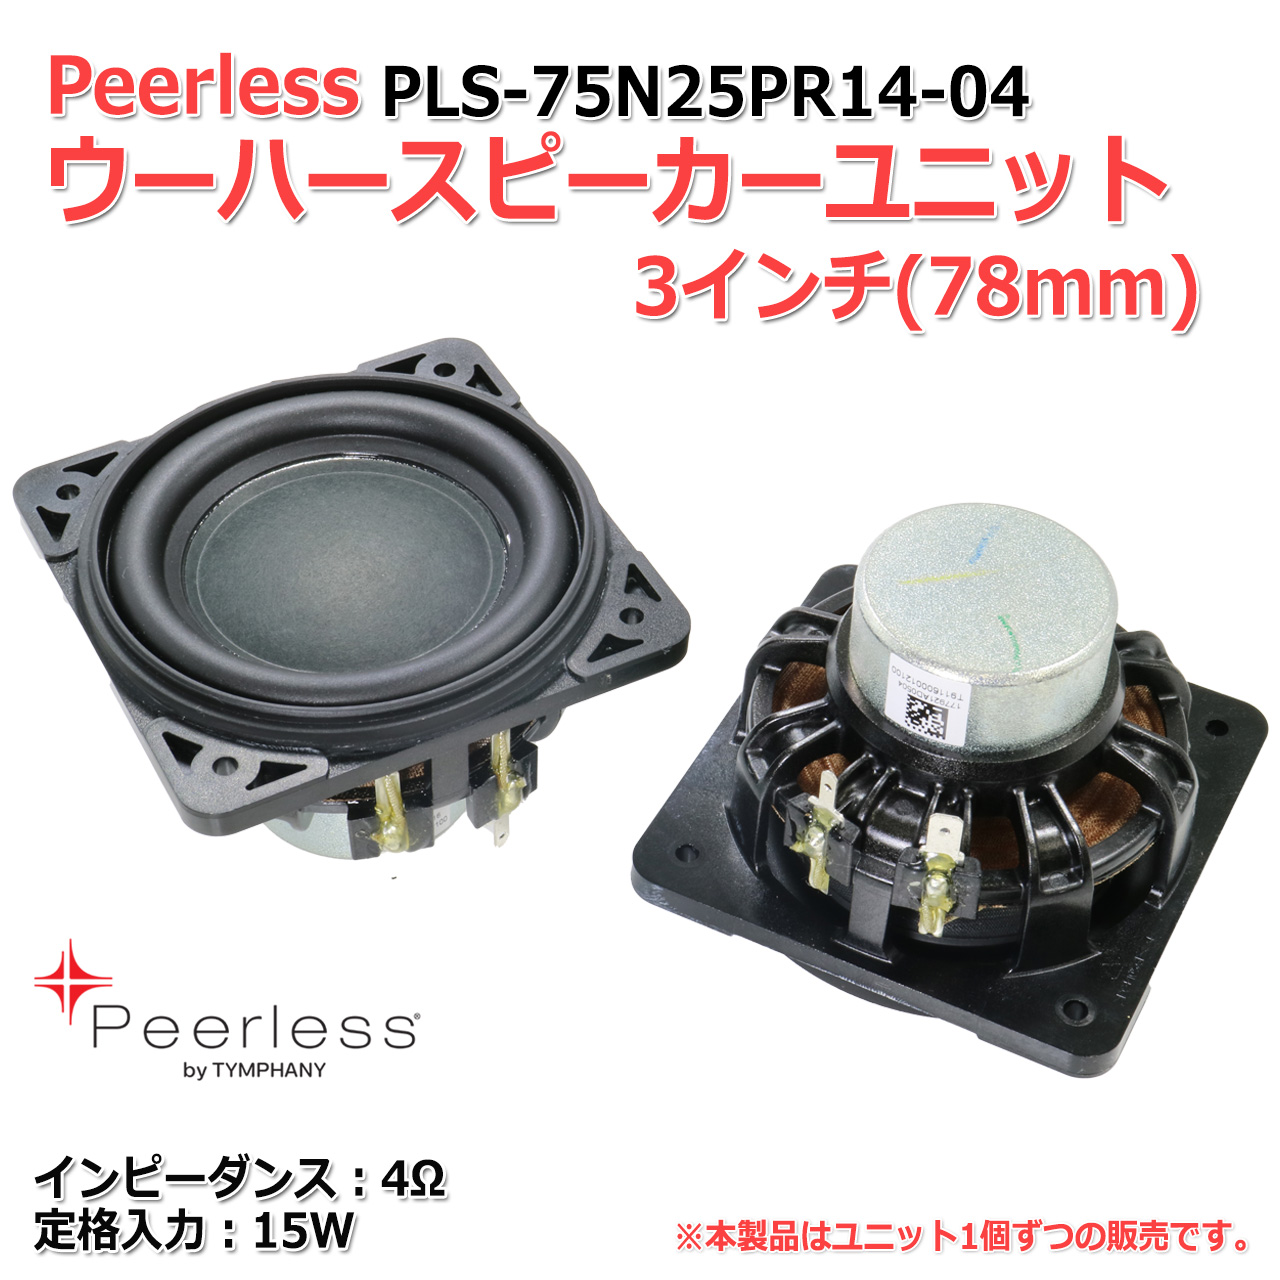 Peerless PLS-75N25PR14-04 woofer speaker unit 3 -inch (78mm) 4Ω/15W[ speaker original work /DIY audio ]